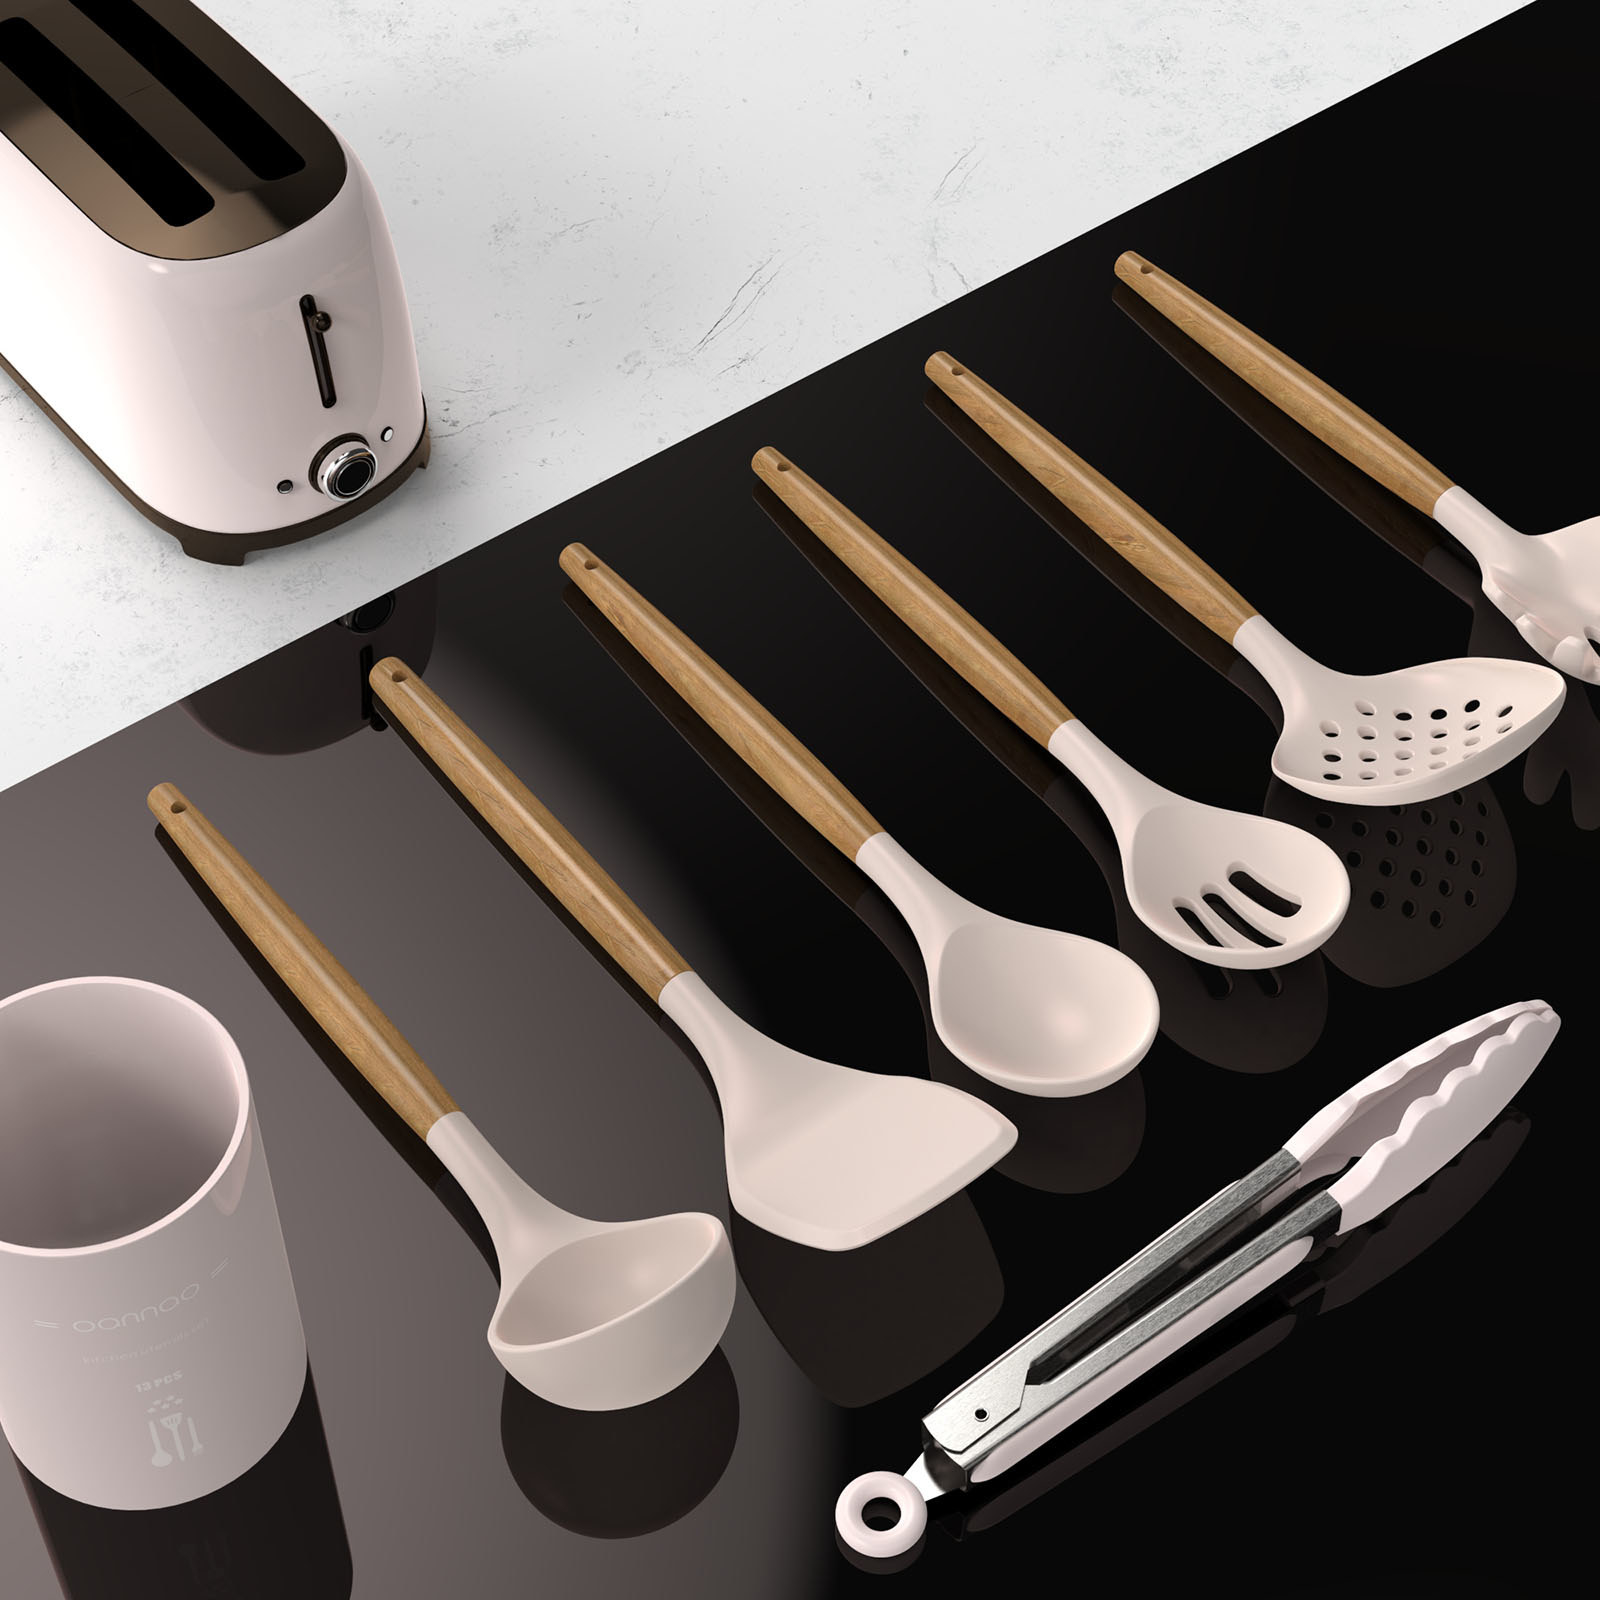 Set of khaki utensils and utensil holder on a counter